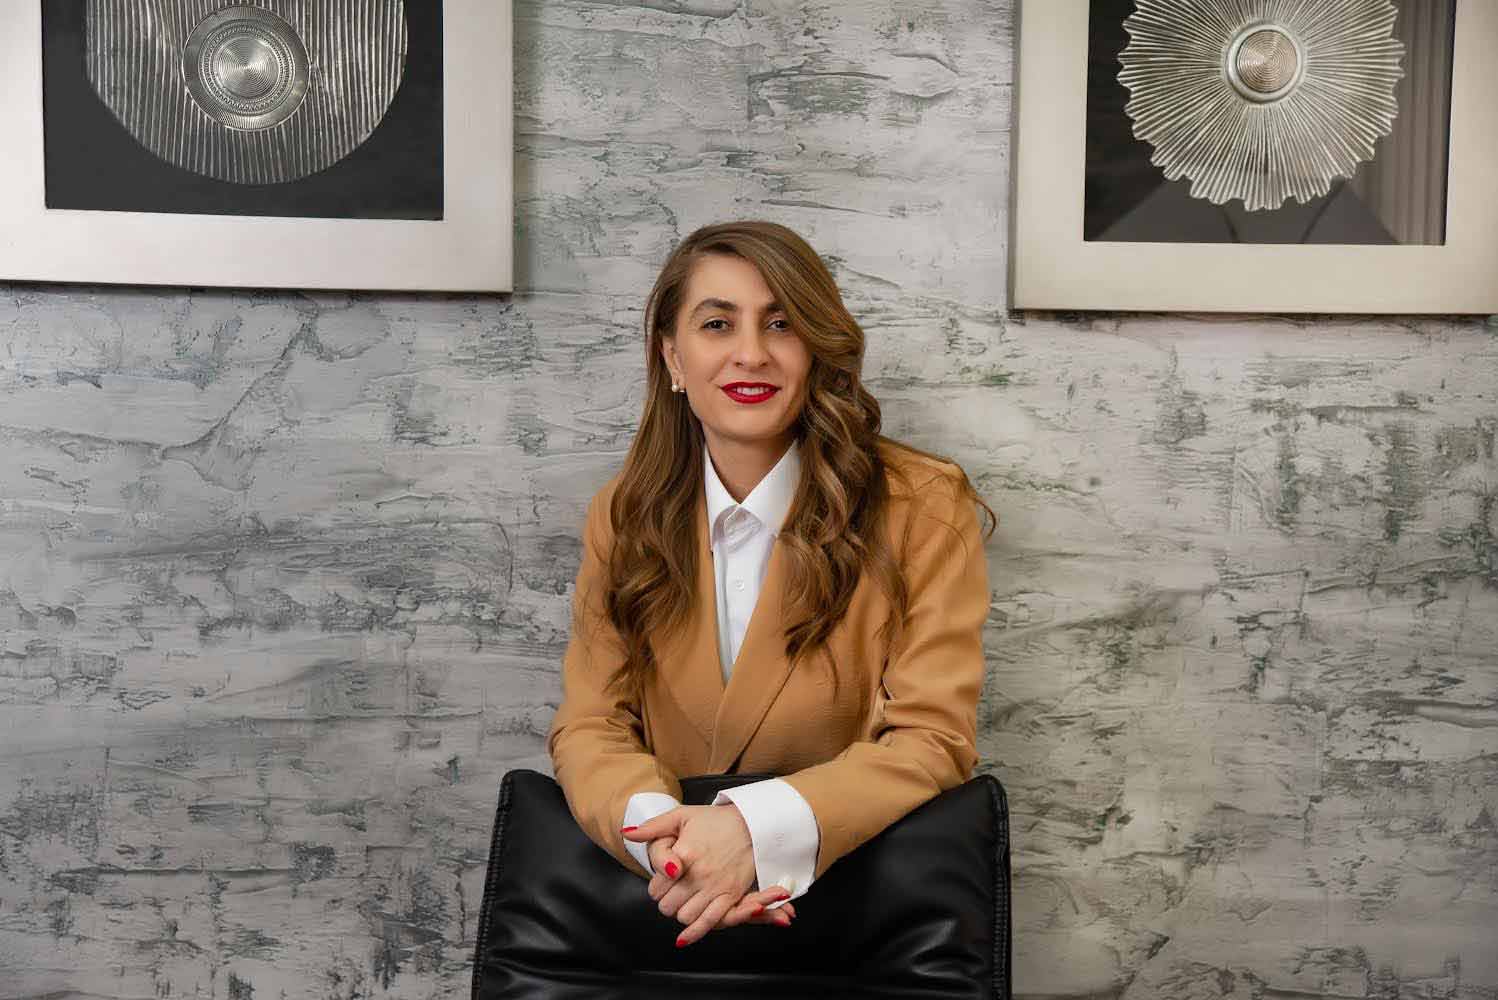 Natia Nadirashvili, the Public Relations Manager at Libo Group